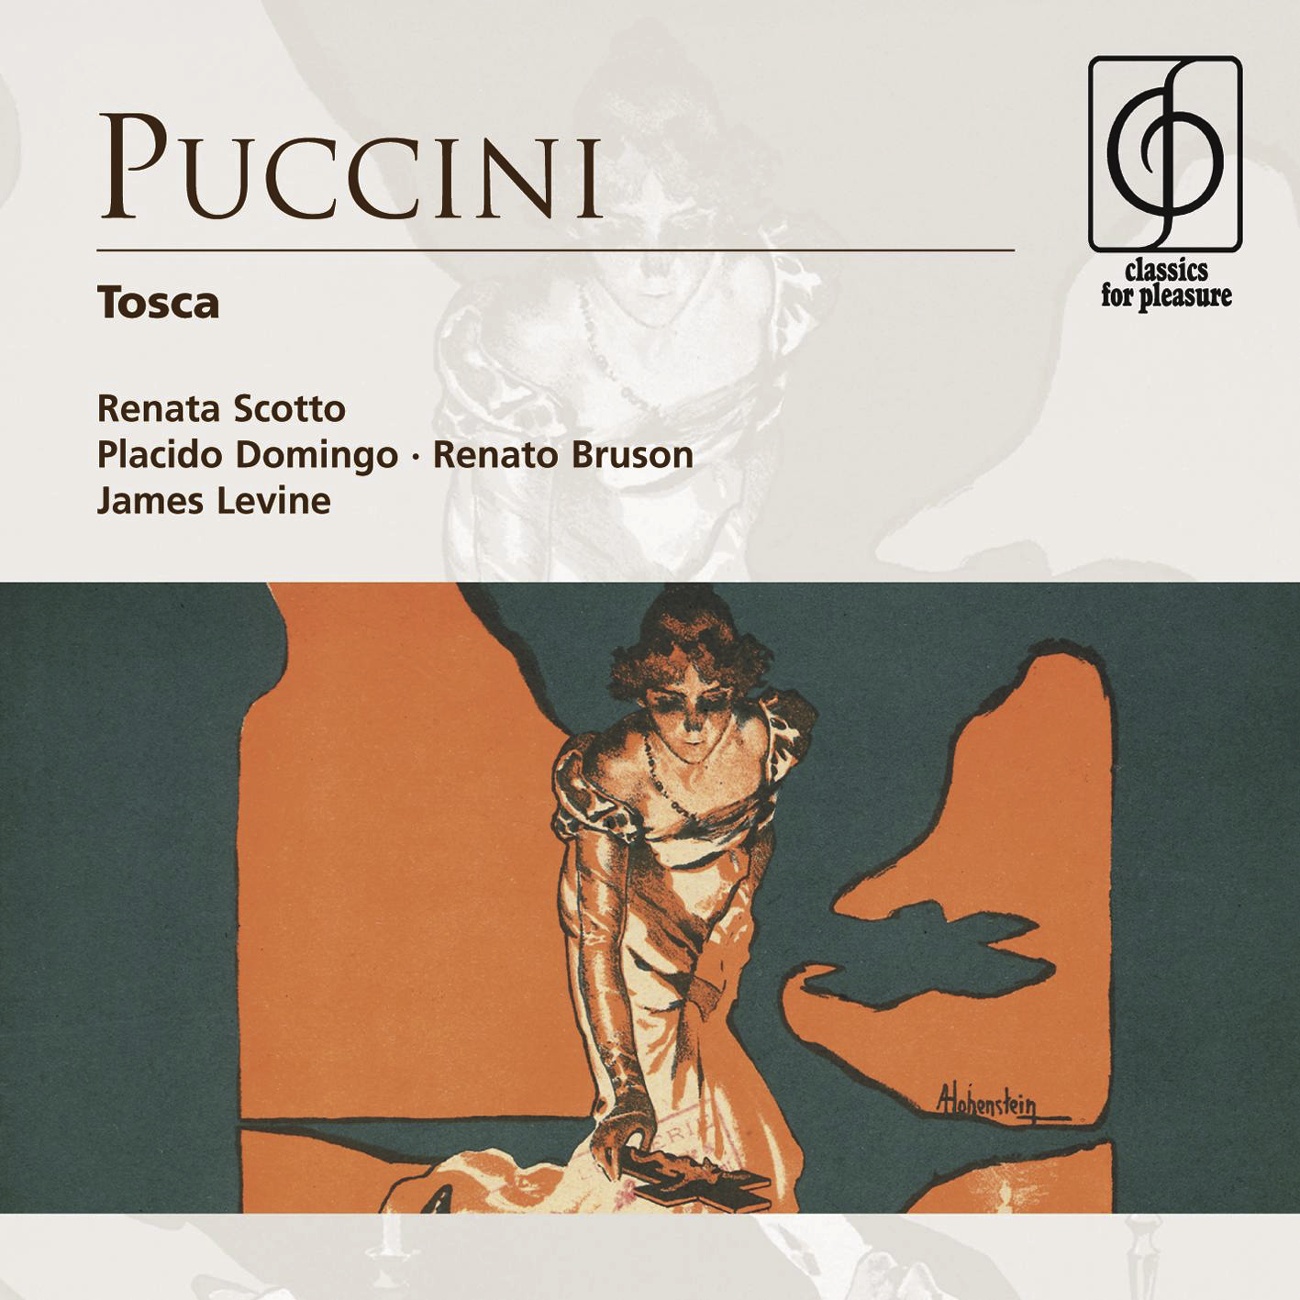 Tosca  Opera in three acts 1997 Digital Remaster, Act I: Gente la dentro! Cavaradossi, Angelotti, Tosca